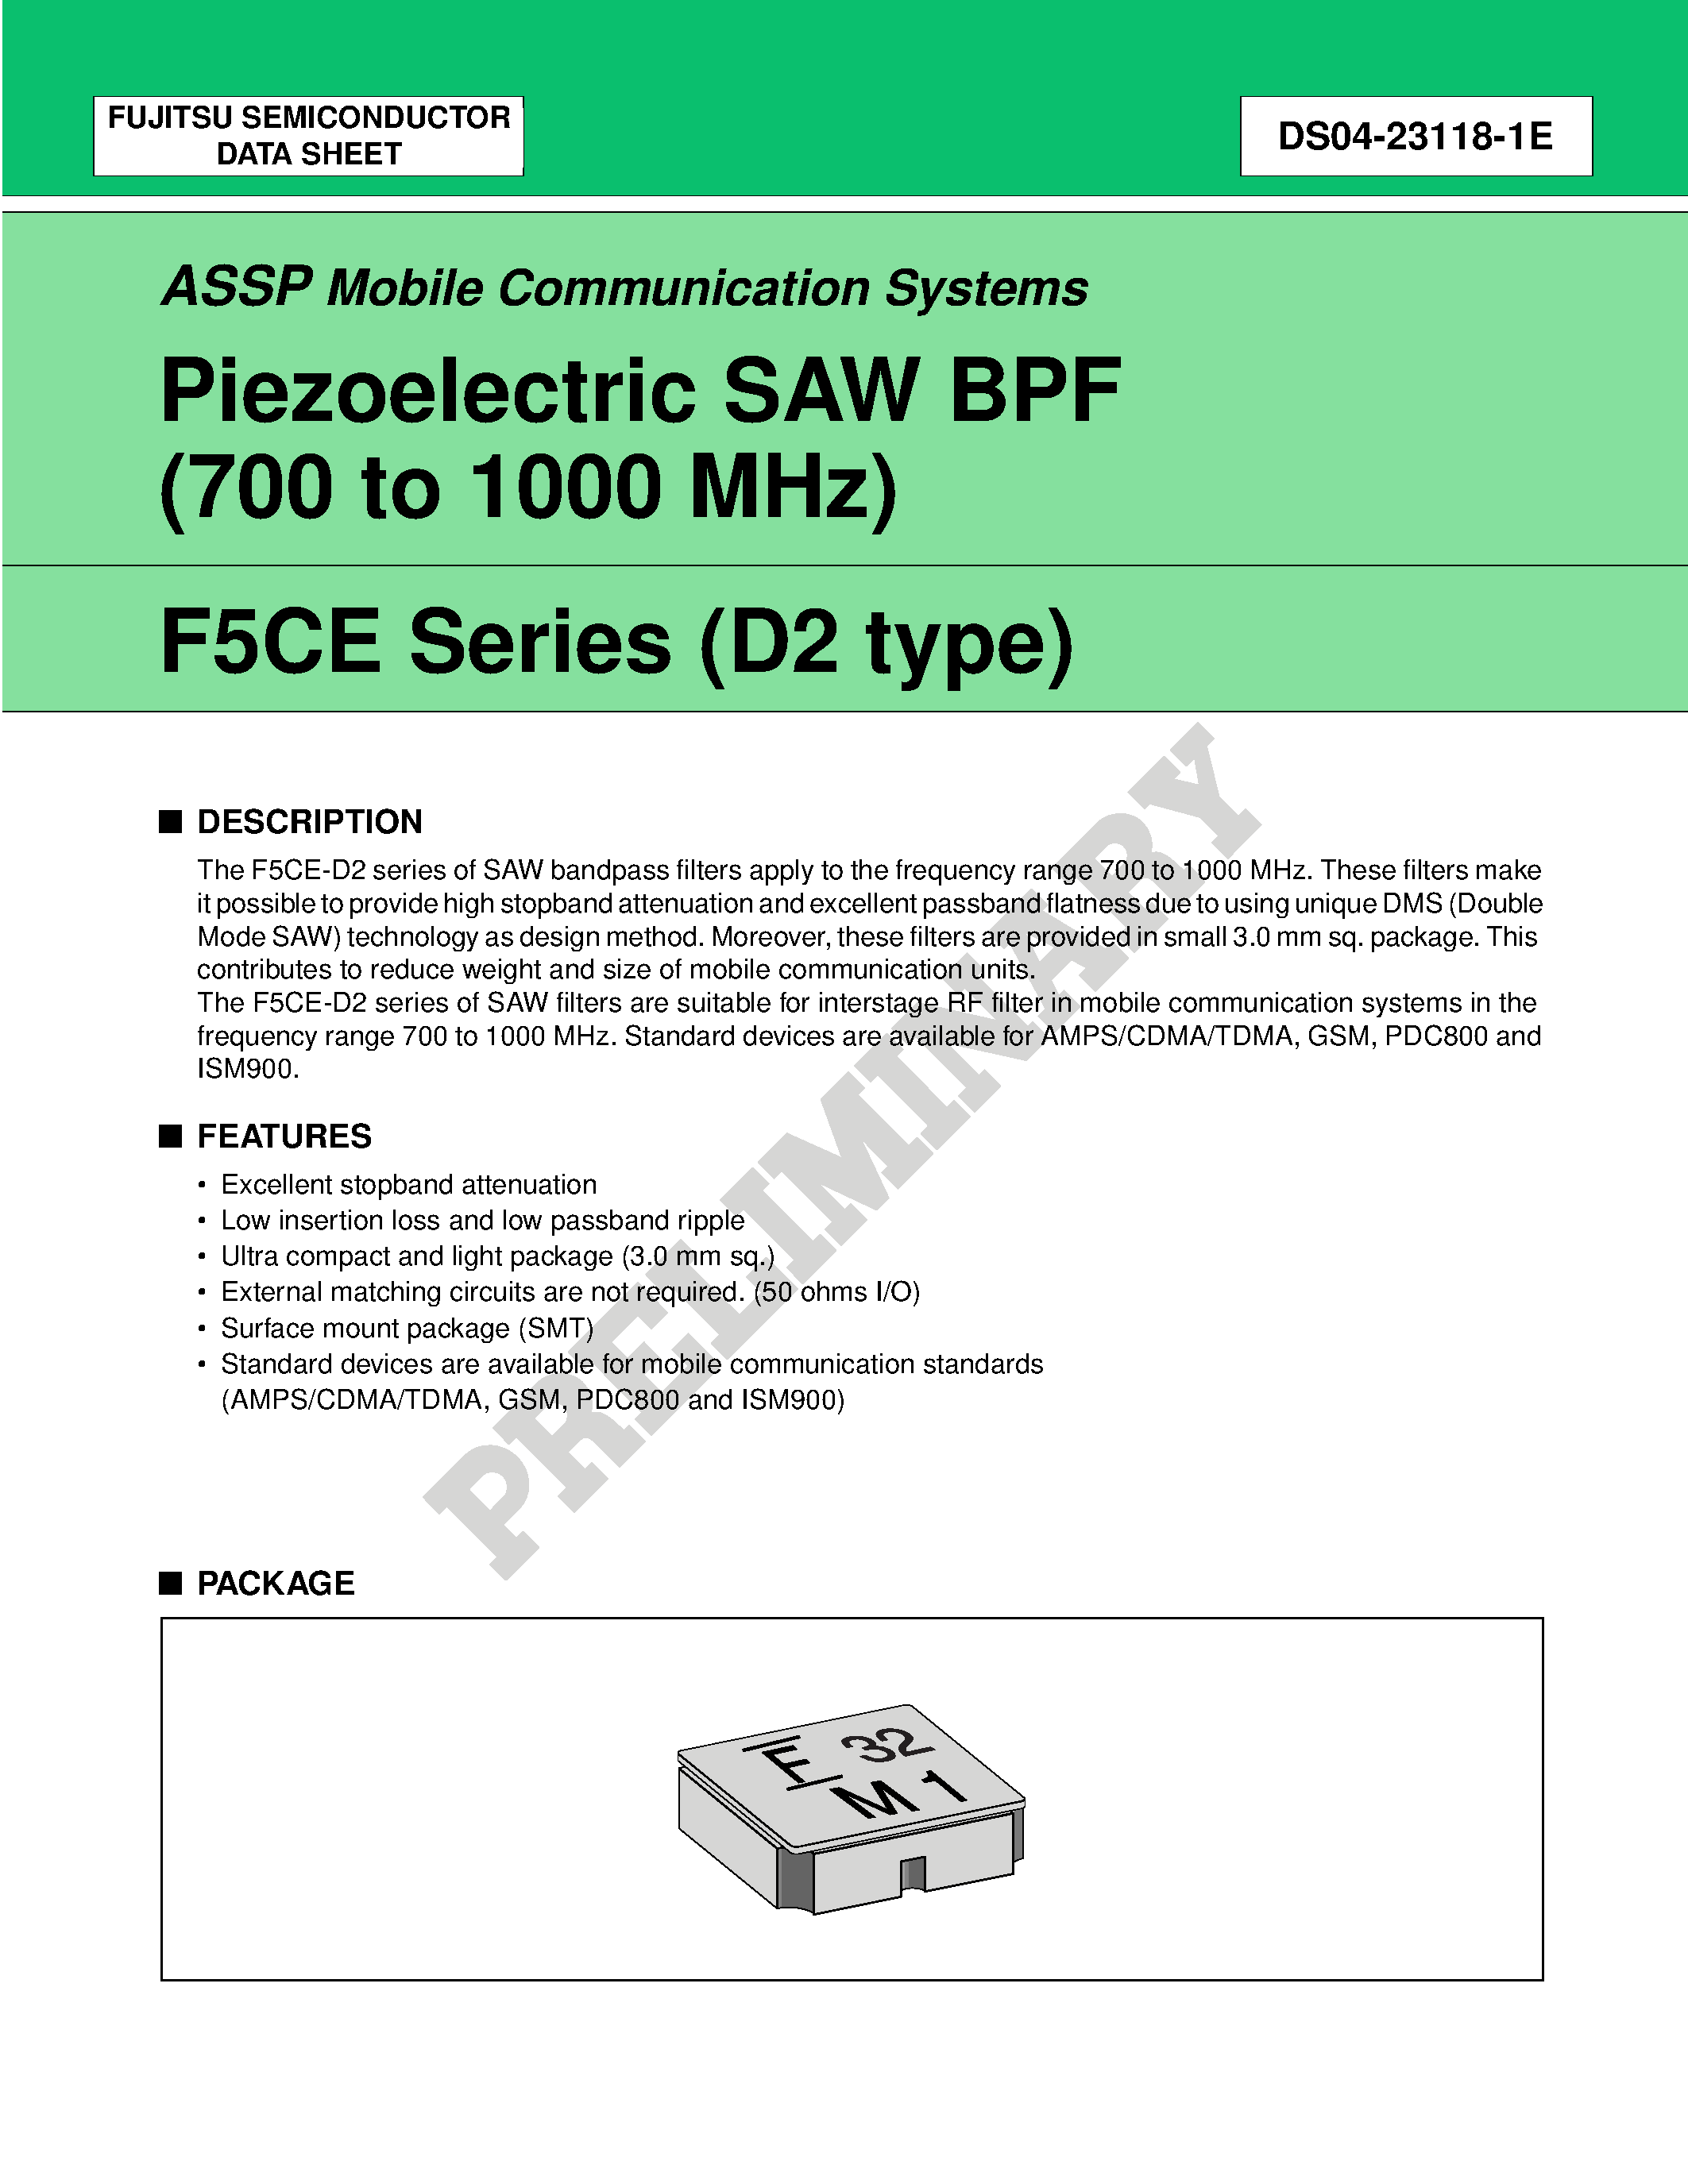 Datasheet FAR-F5CE-915M00-D238-U - Piezoelectric SAW BPF (700 to 1700 MHz) page 1